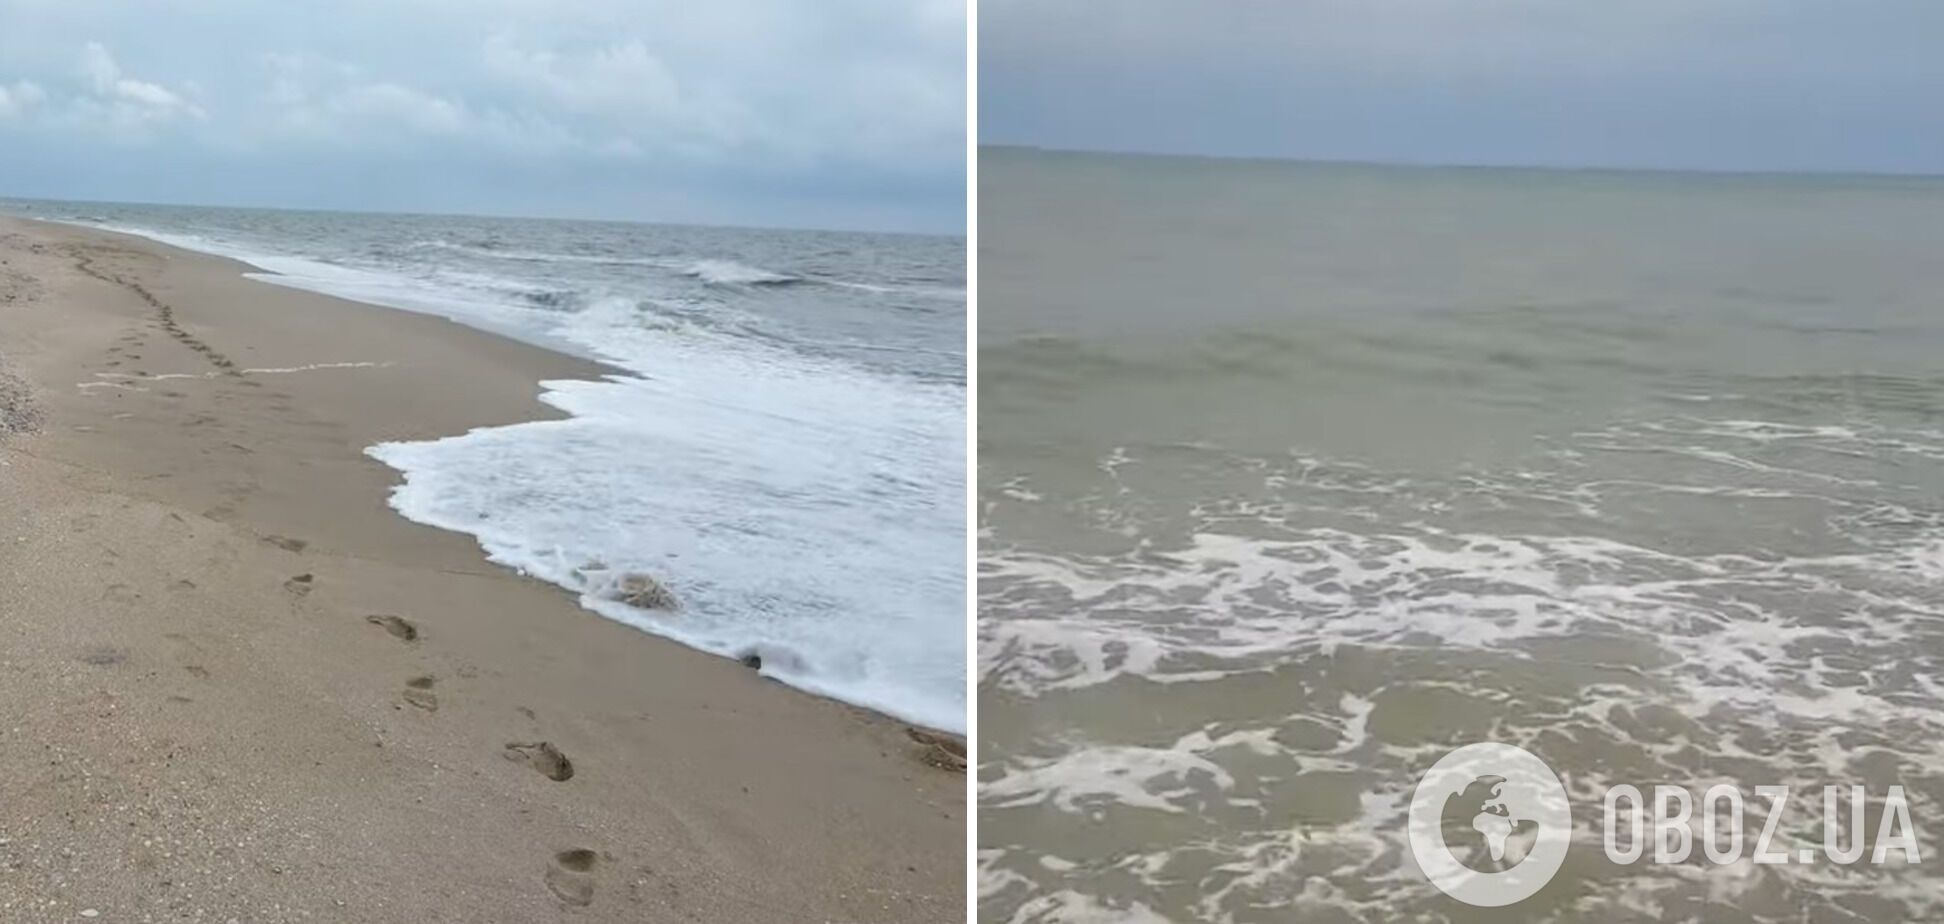 По словам отдыхающих, волны выбрасывают медуз далеко на берег